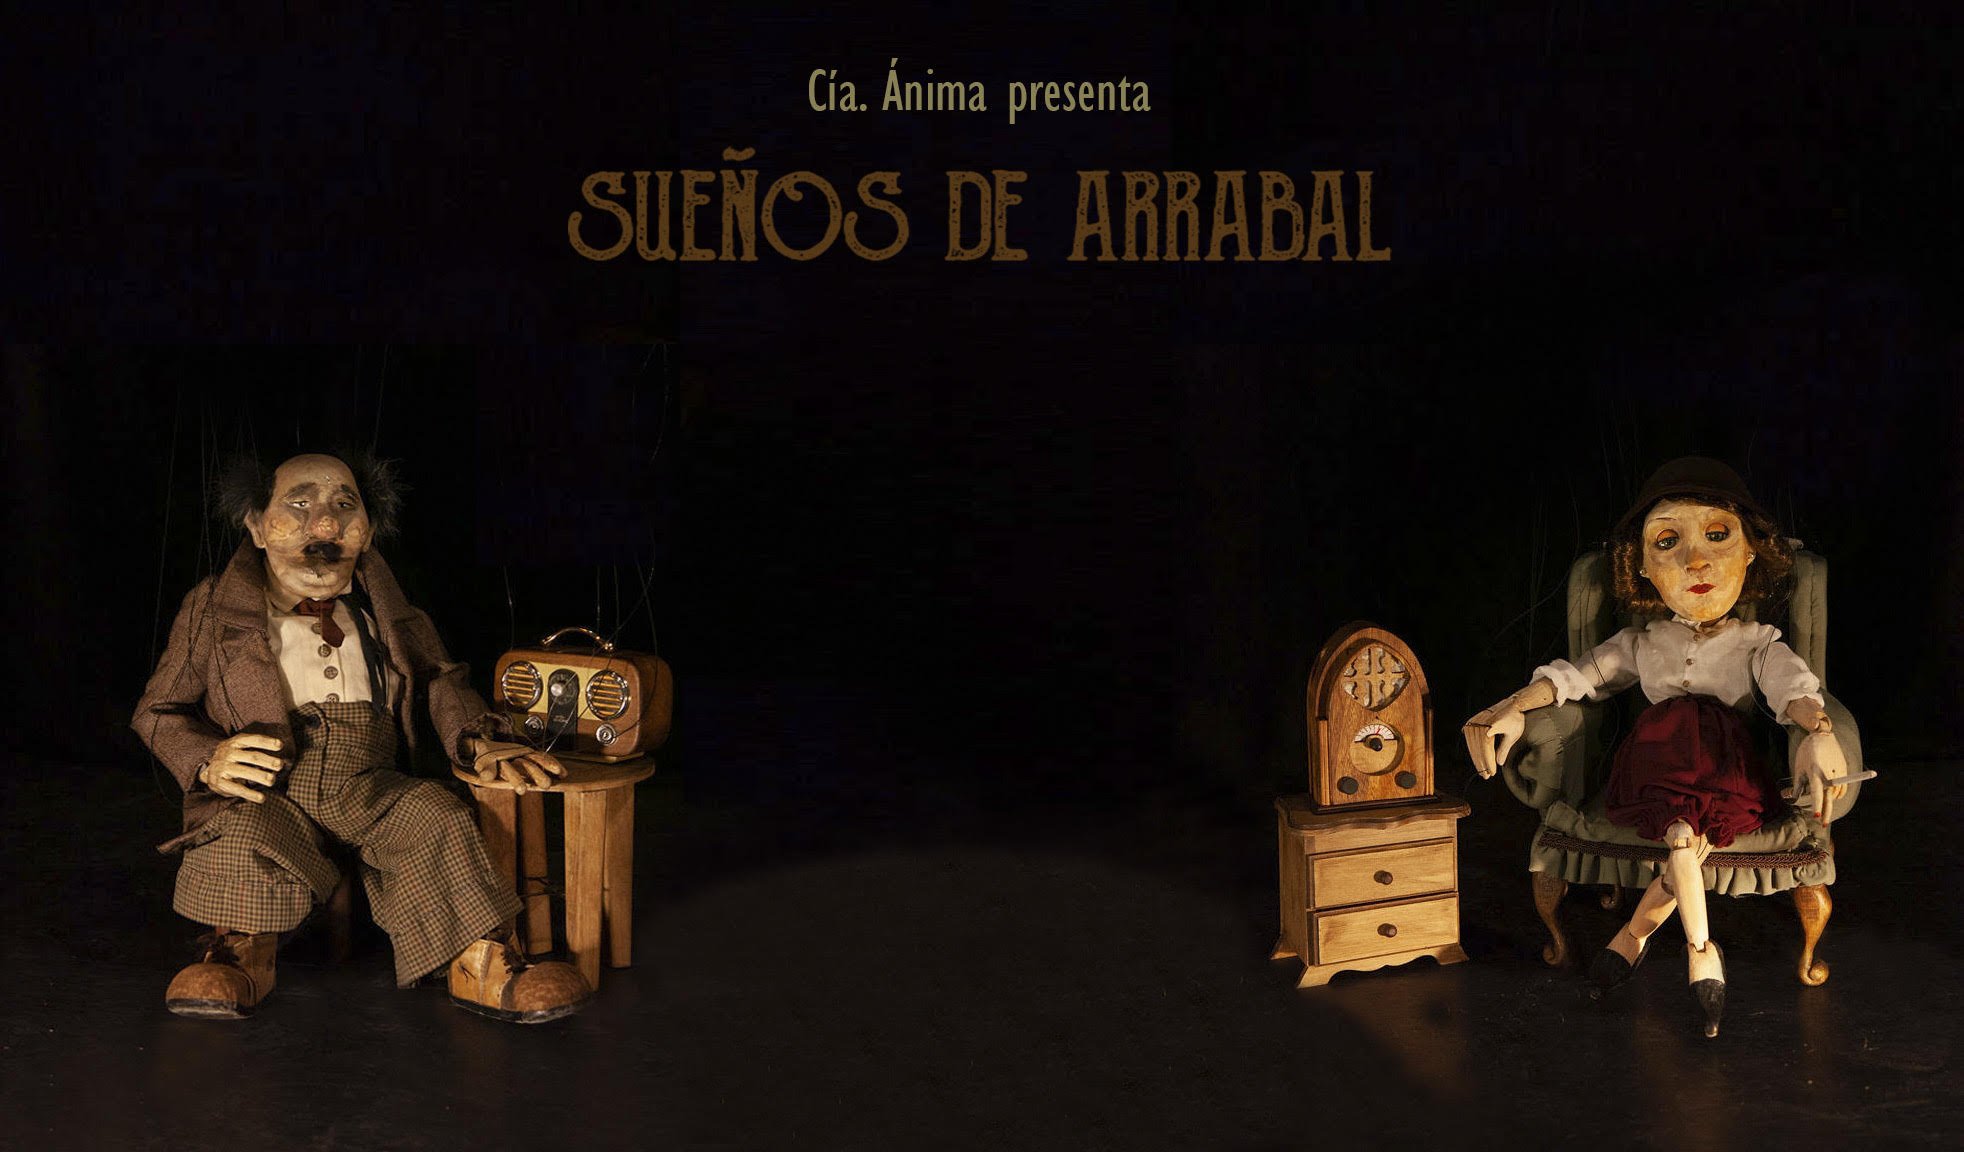 La Cía. Ánima presenta «Sueños de Arrabal», imperdible espectáculo de Marionetas